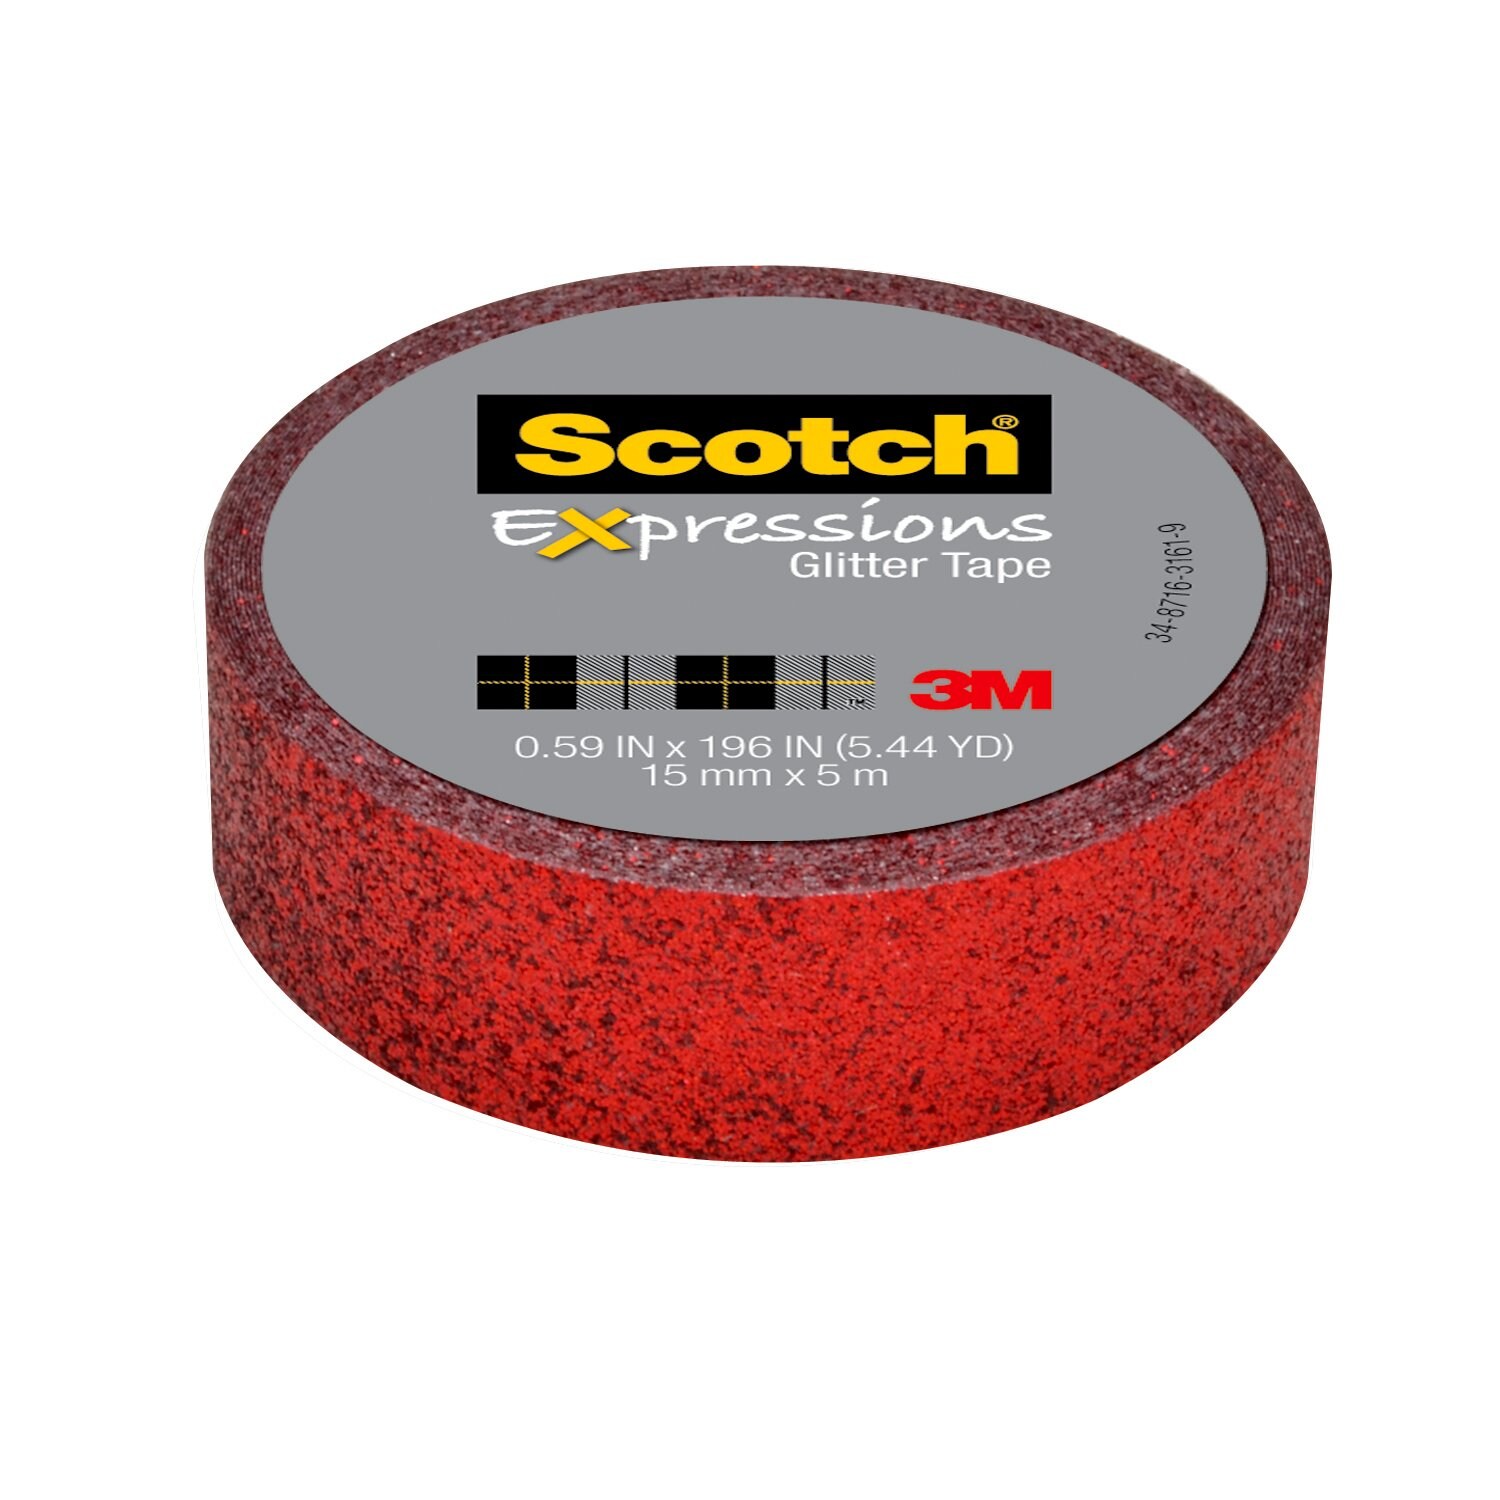 7100141793 - Scotch Expressions Glitter Tape C514-RED, .59 in x 196 in (15 mm x 5 m)
Red Glitter